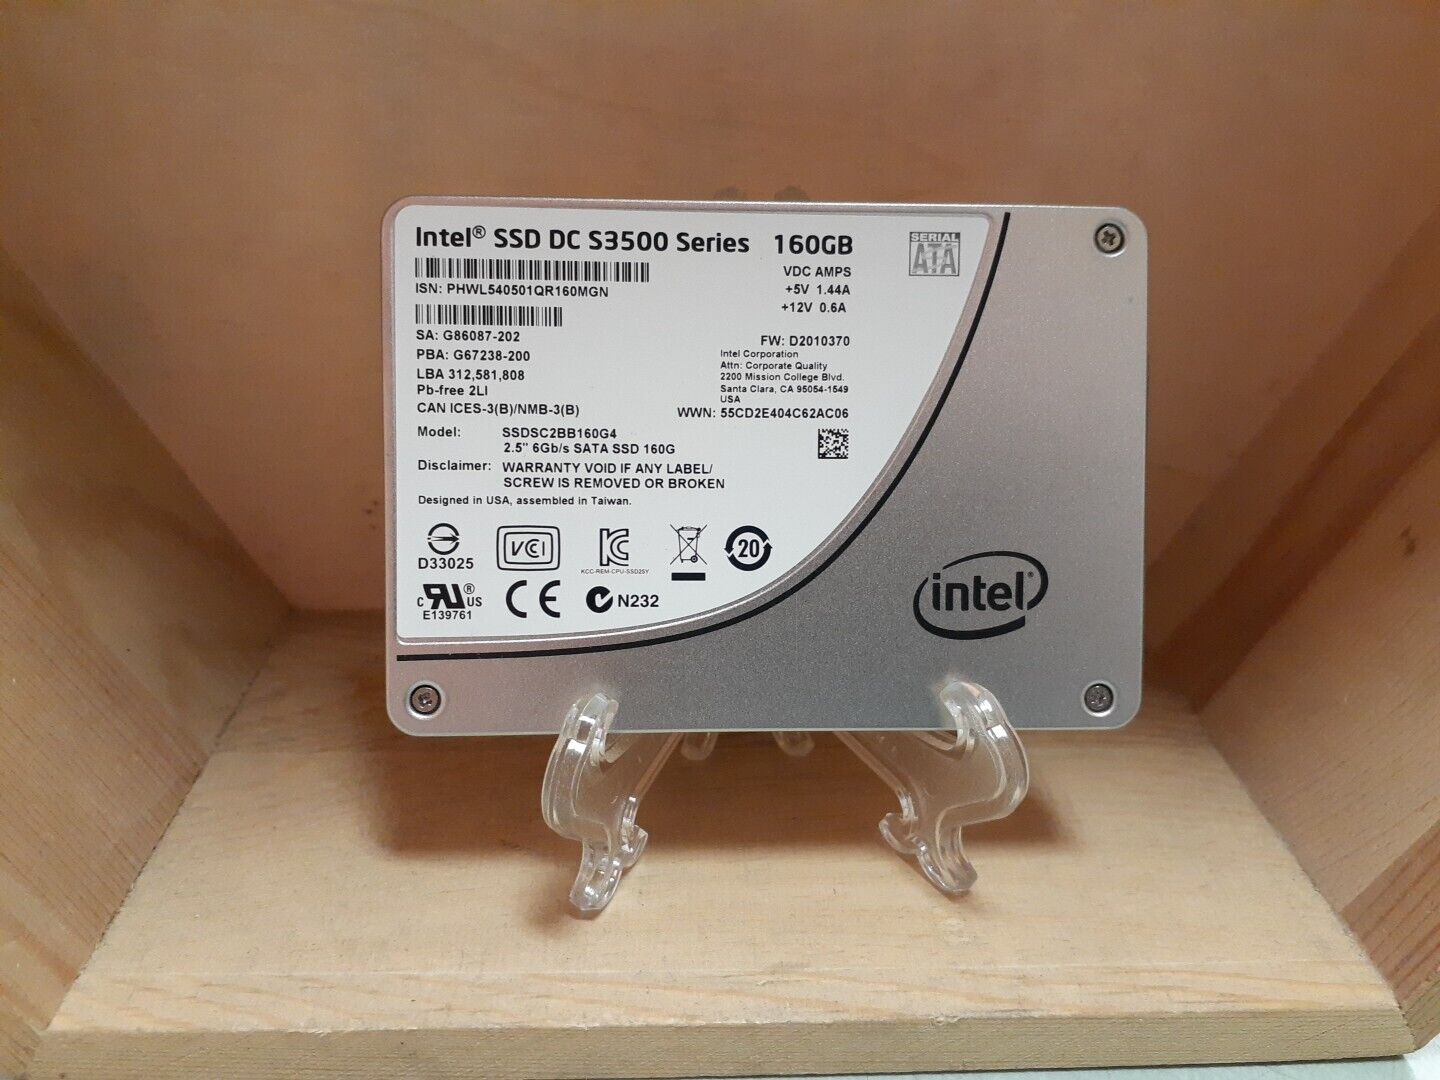 Intel SSD DC S3500 Series 160GB Solid State Drive SSDSC2BB160G4 G86087-202